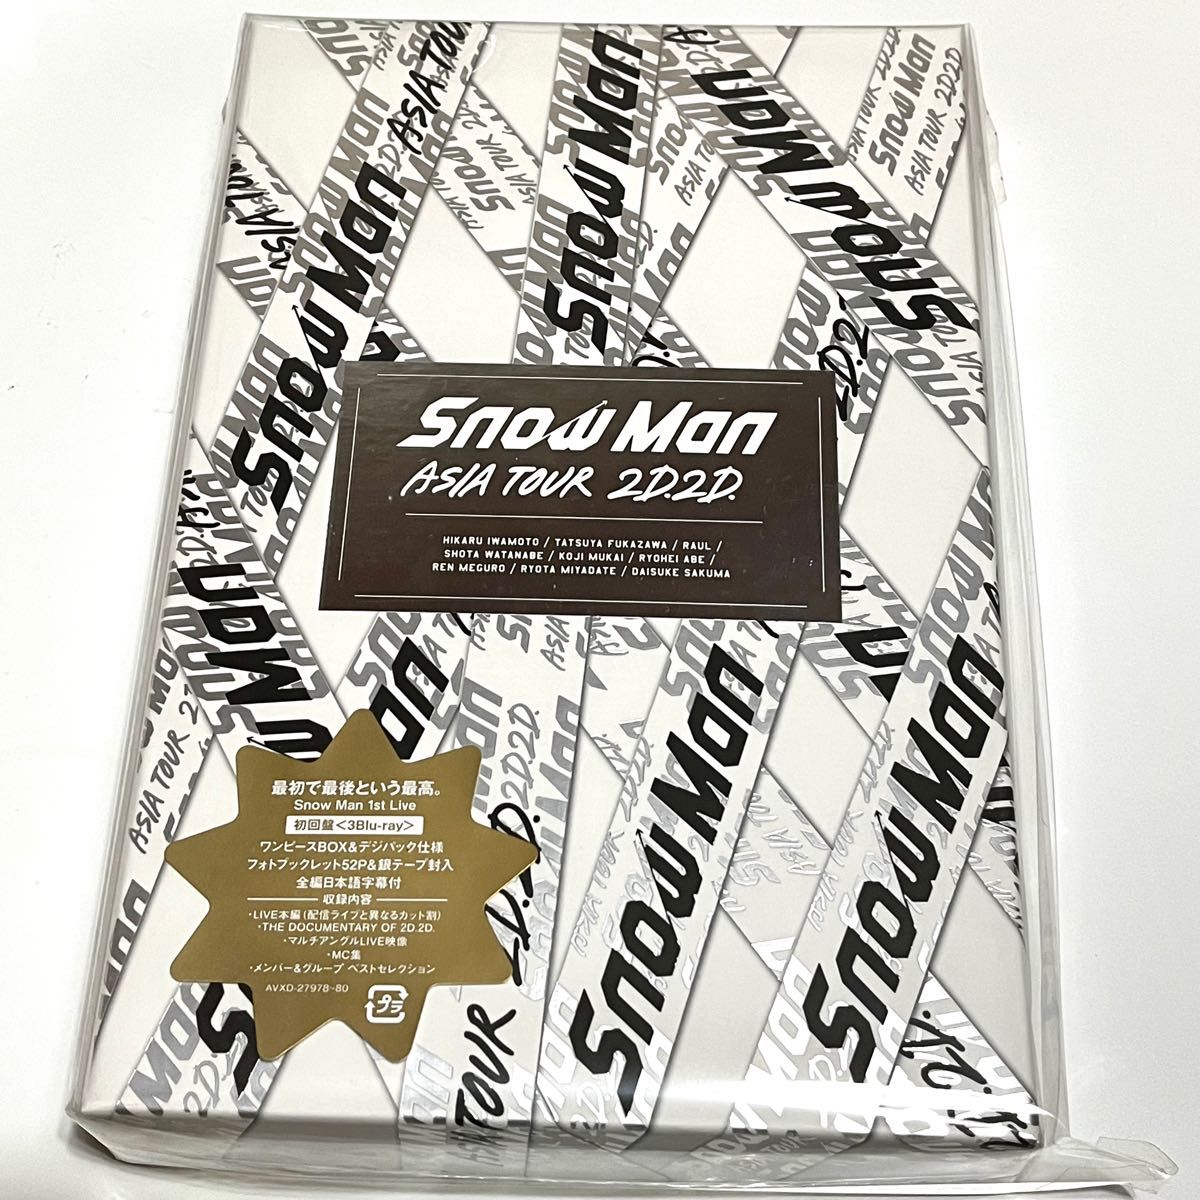 プライスダウン 【新品】Snow Man ASIA TOUR 2D.2D. 初回盤Blu-ray